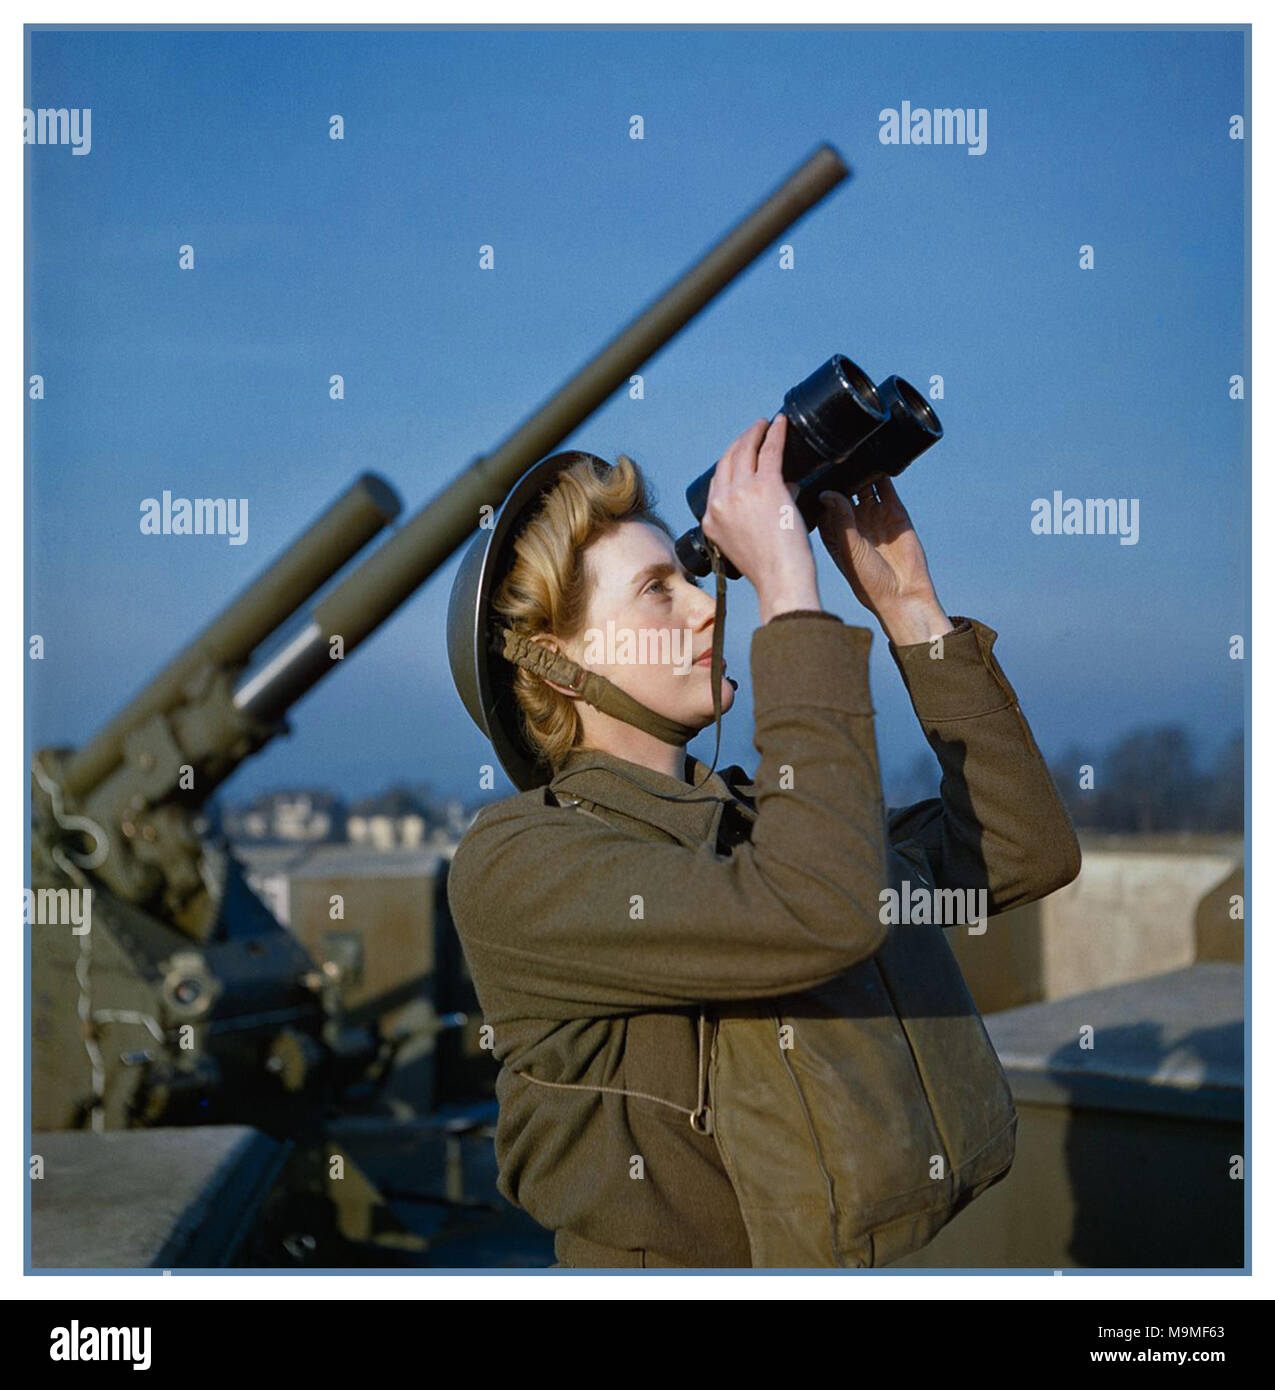 1940 WW2 Dezember 1942 einem Britischen Auxiliary Territorial Service (ATS) "Spotter" auf einem 3,7-Zoll-anti-aircraft "Ack ack" gun site Suche nach visuellen Zeichen von Nazi Deutschland feindliche Flugzeuge oder fliegenden Bomben Stockfoto